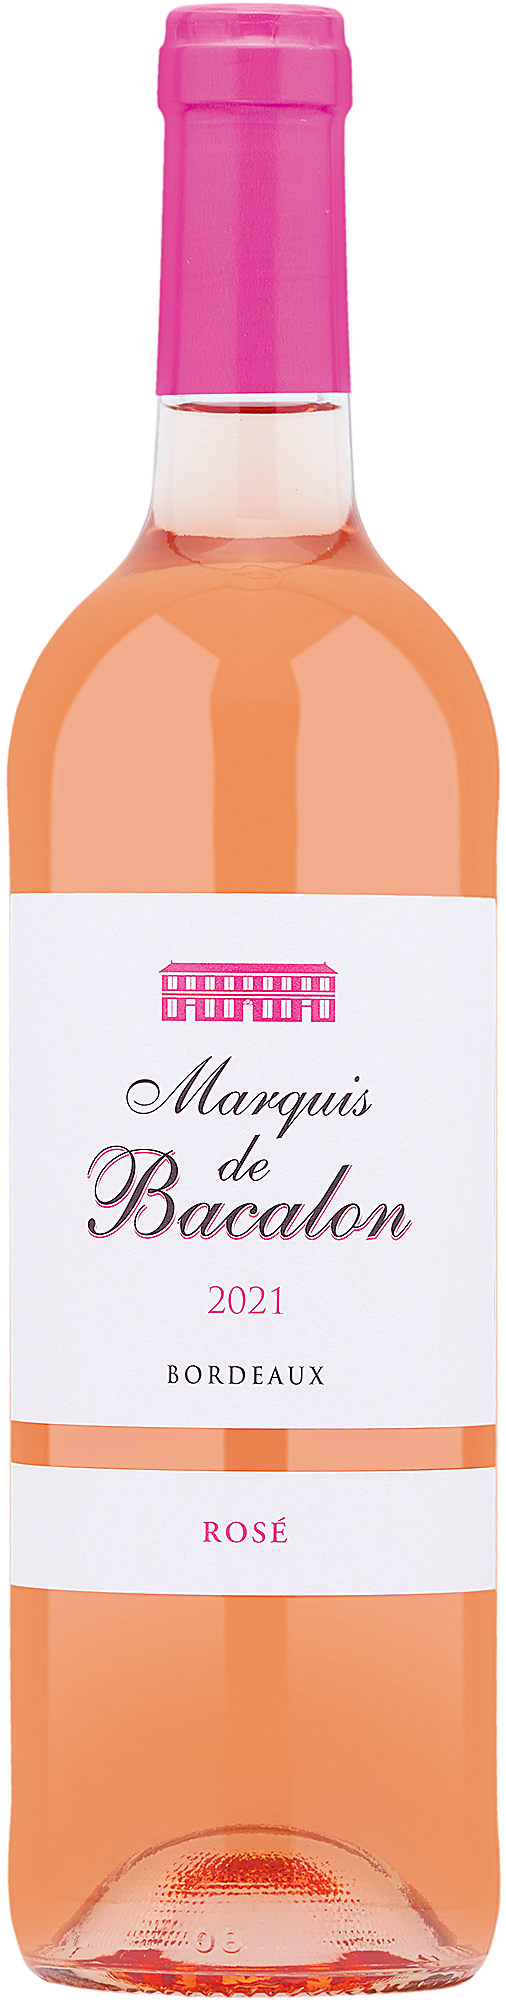 2021 Marquis de Bacalon Bordeaux Rosé